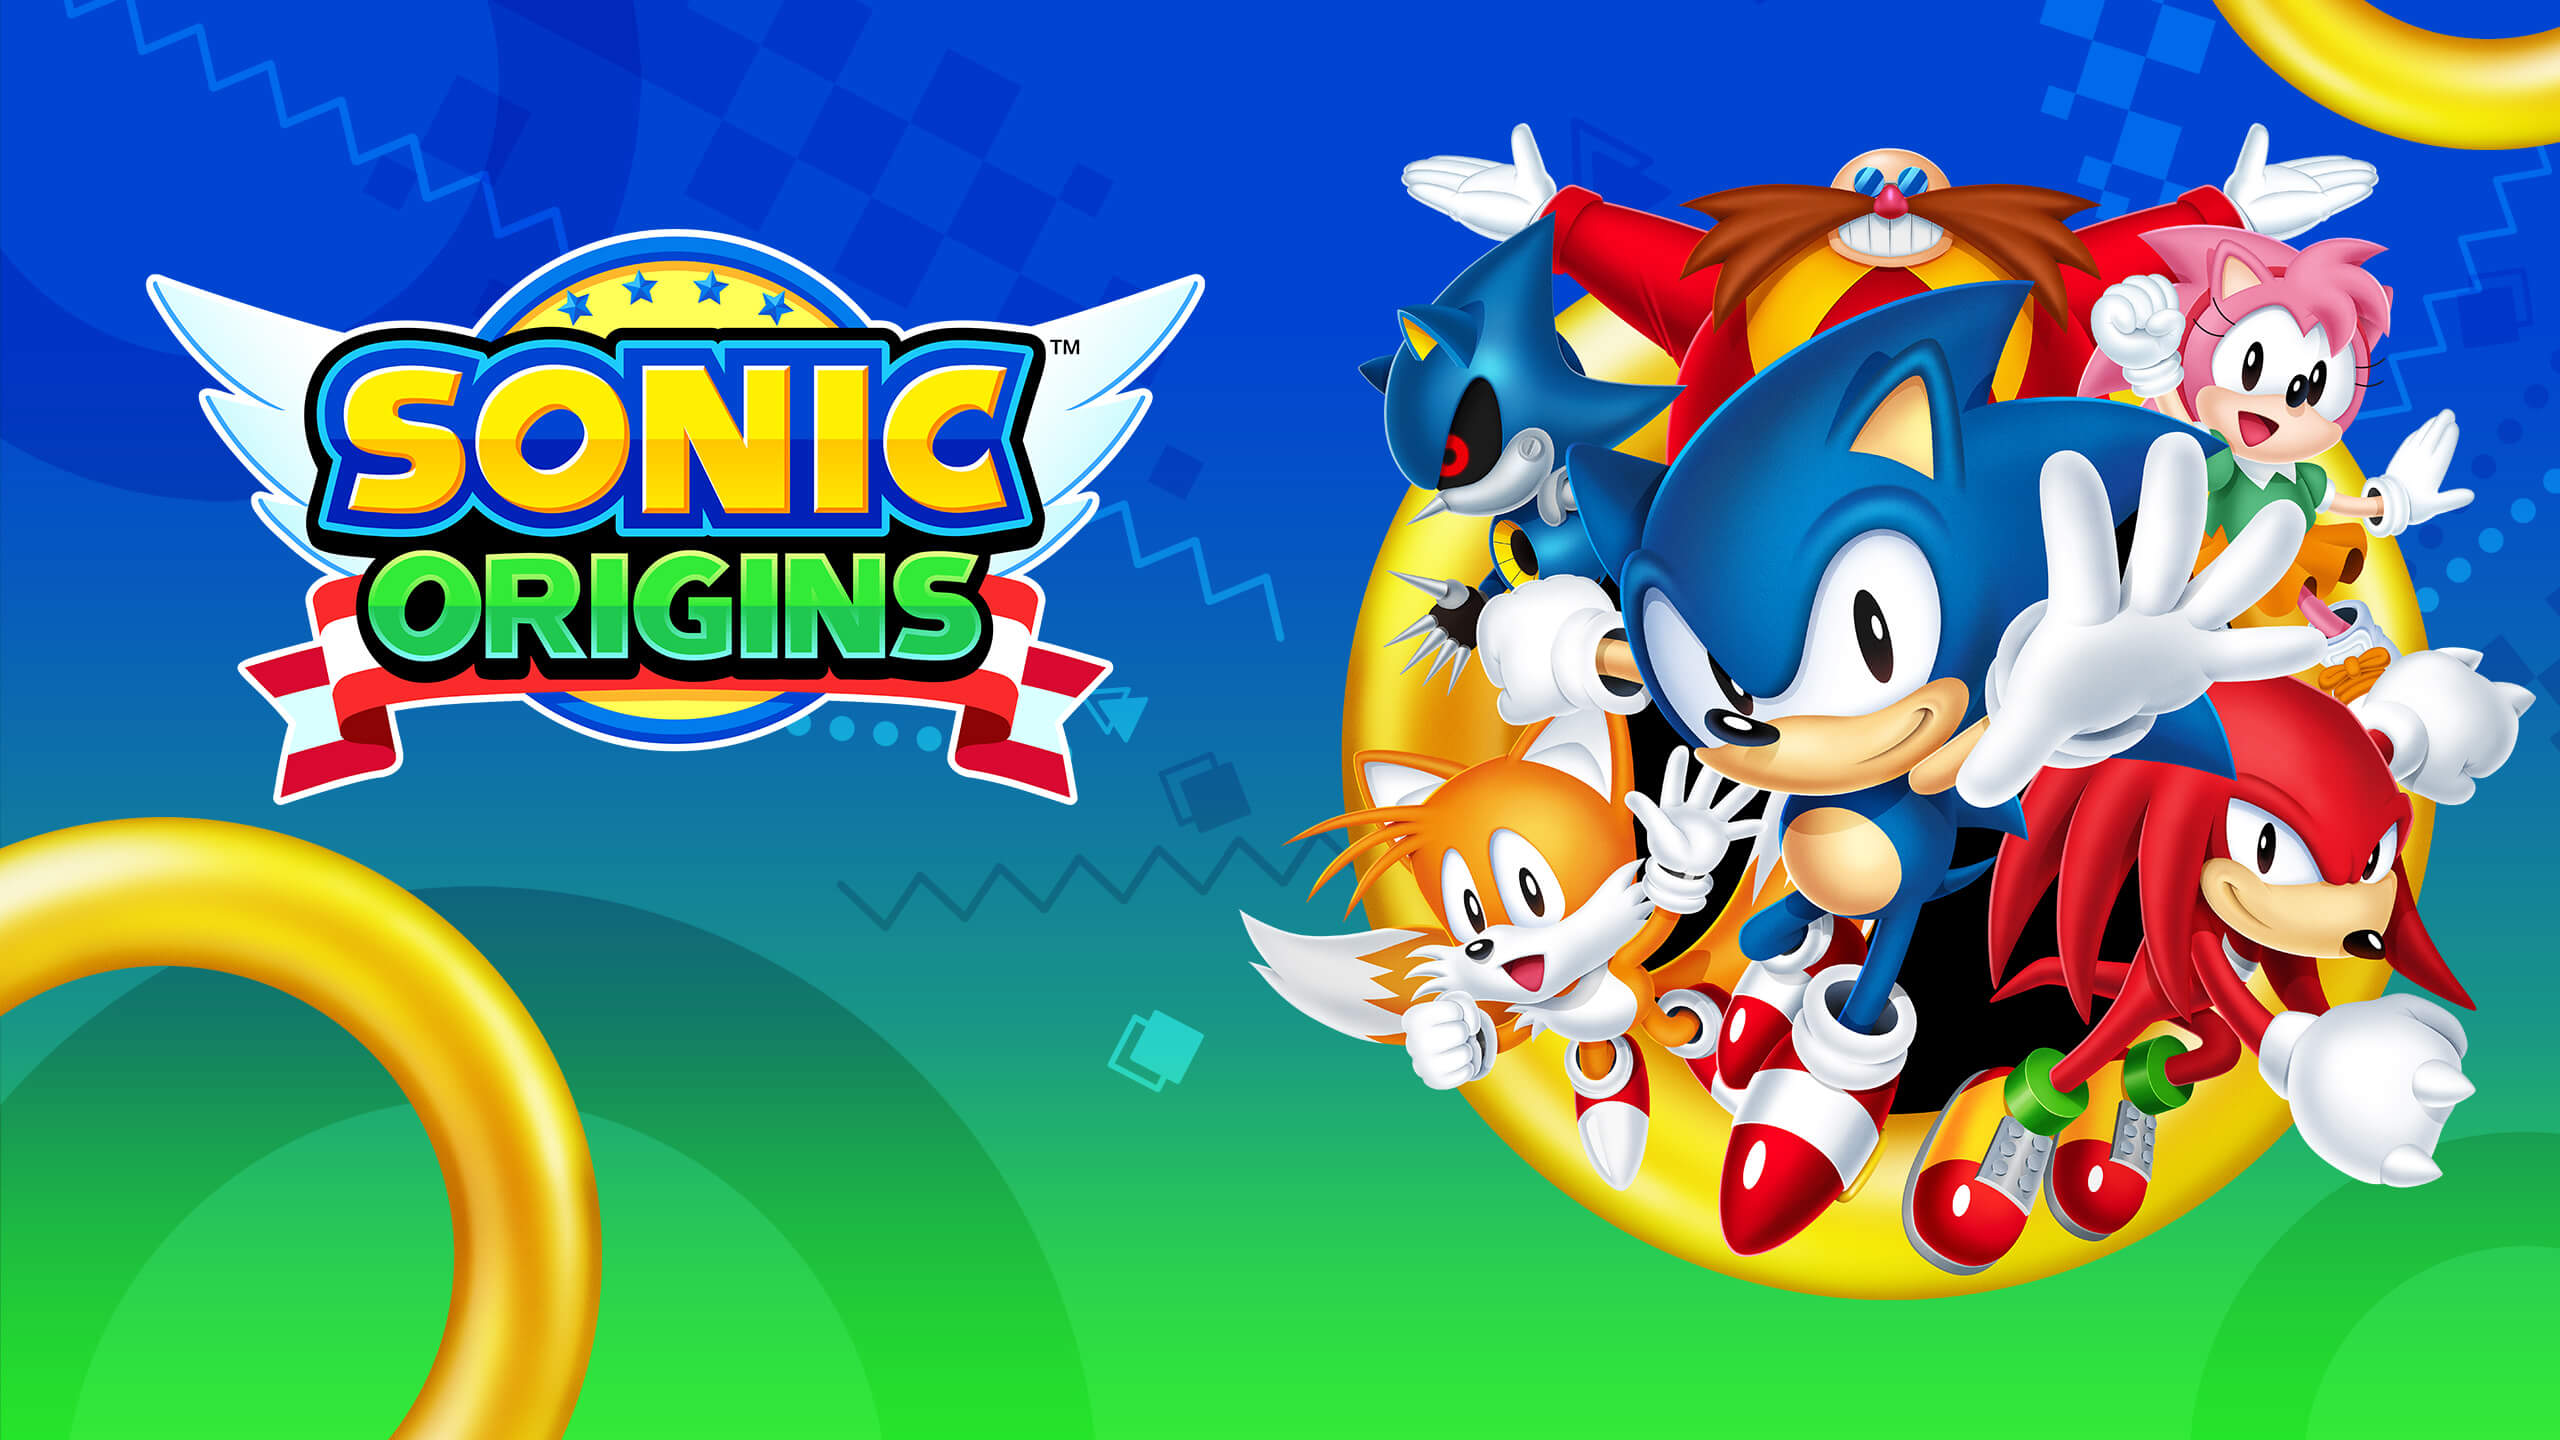 Designer de Sonic 2 revela o verdadeiro jogo - Página 2 